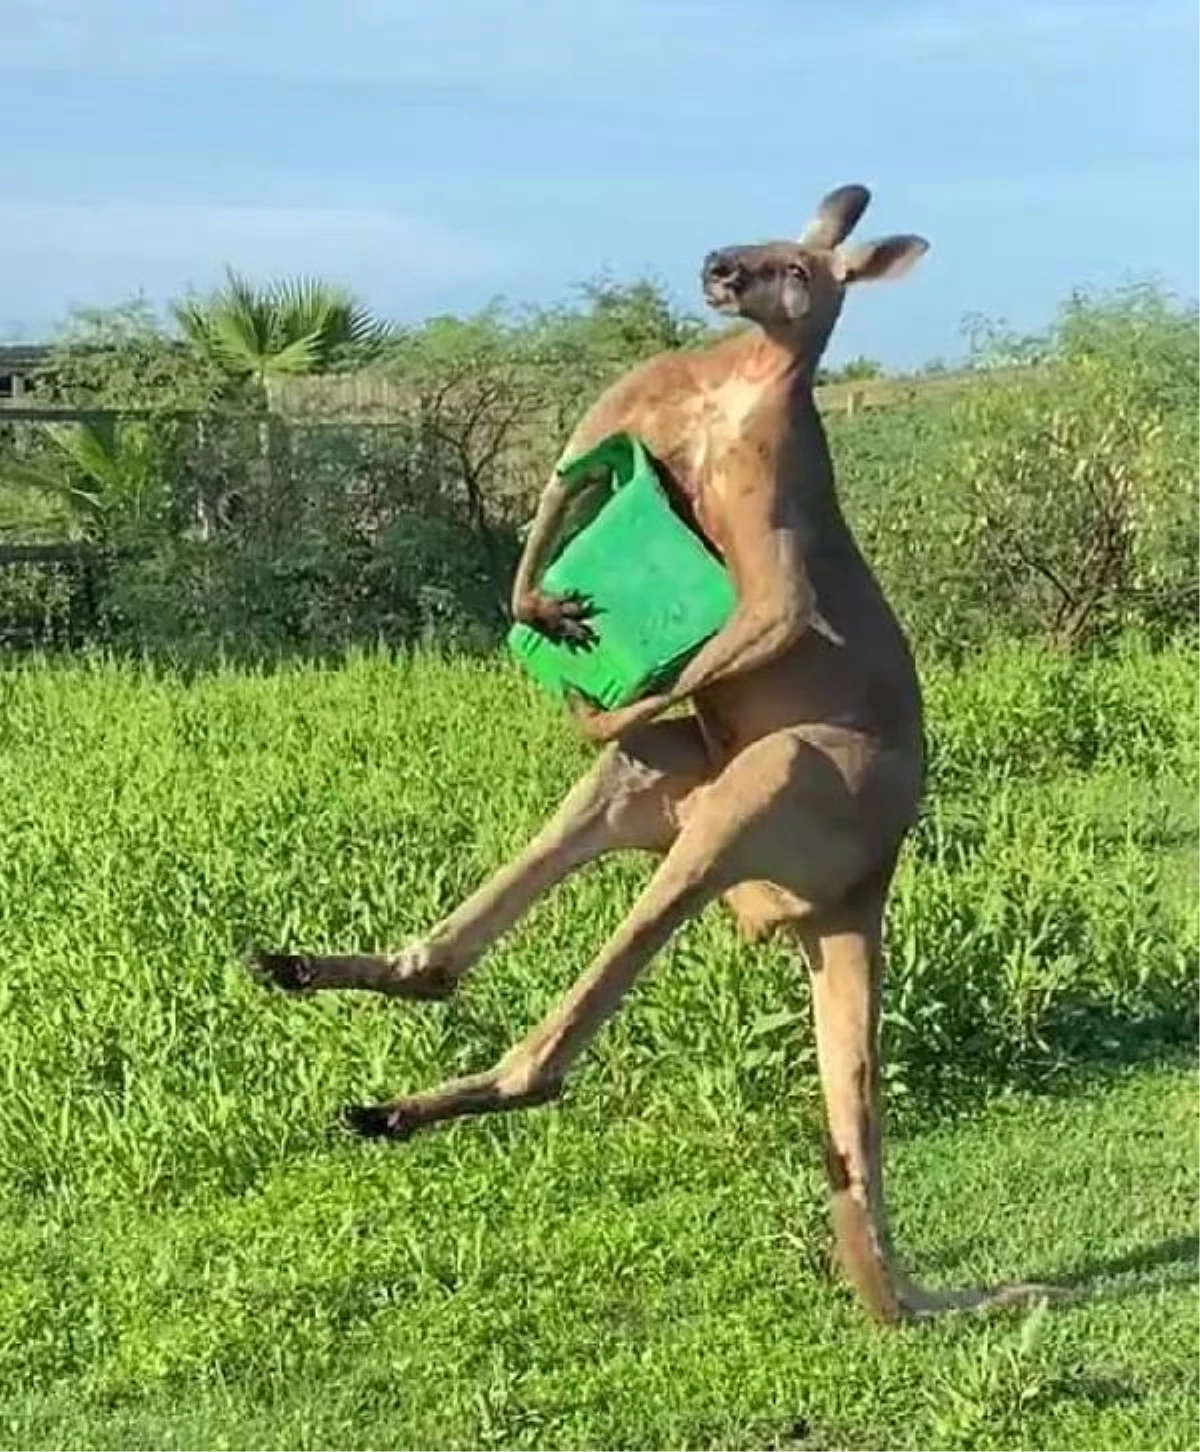 ABD?de kuyruğu üzerinde durabilen kanguru görüntüleri viral oldu